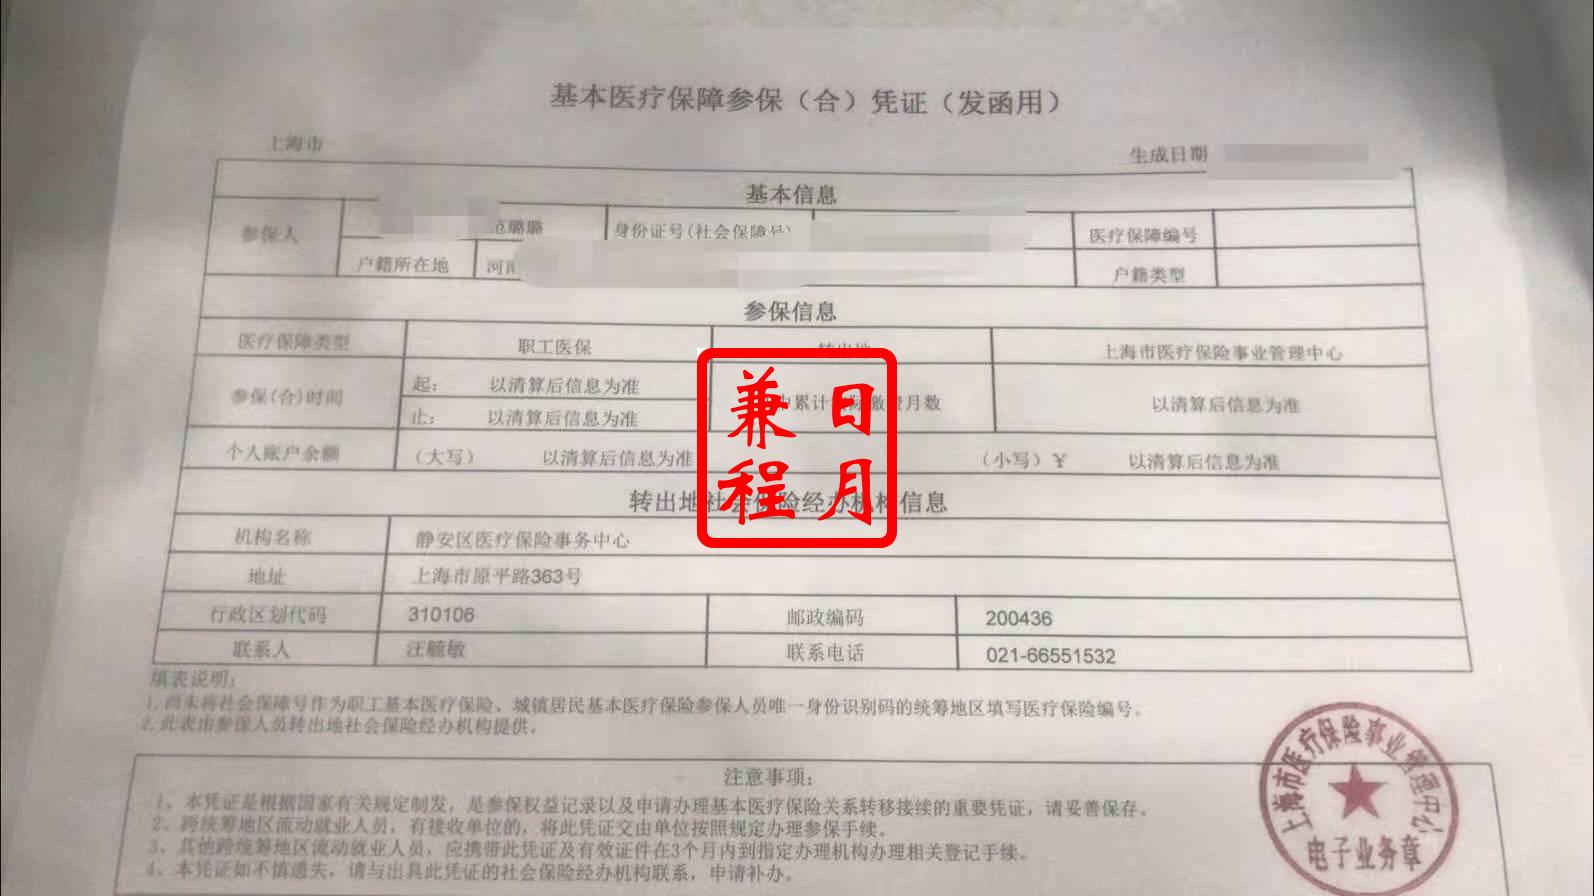 上海静安区医疗保险转出参保凭证打印代办案例.jpg